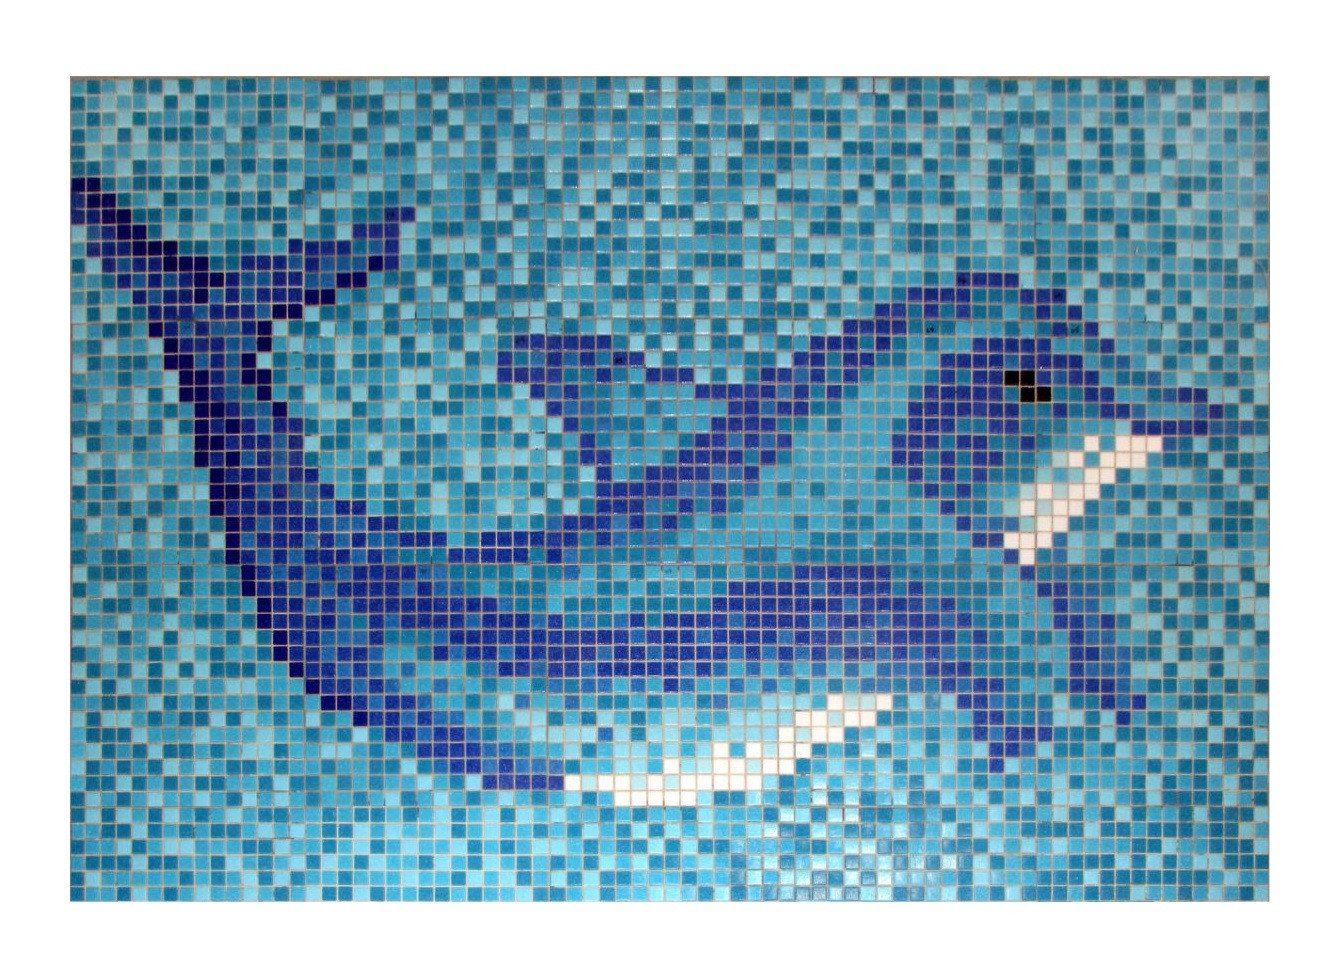 Mosani Mosaikfliesen Delphin Bild Poolboden Glasmosaik hellblau blau, Papierverklebt von Mosani